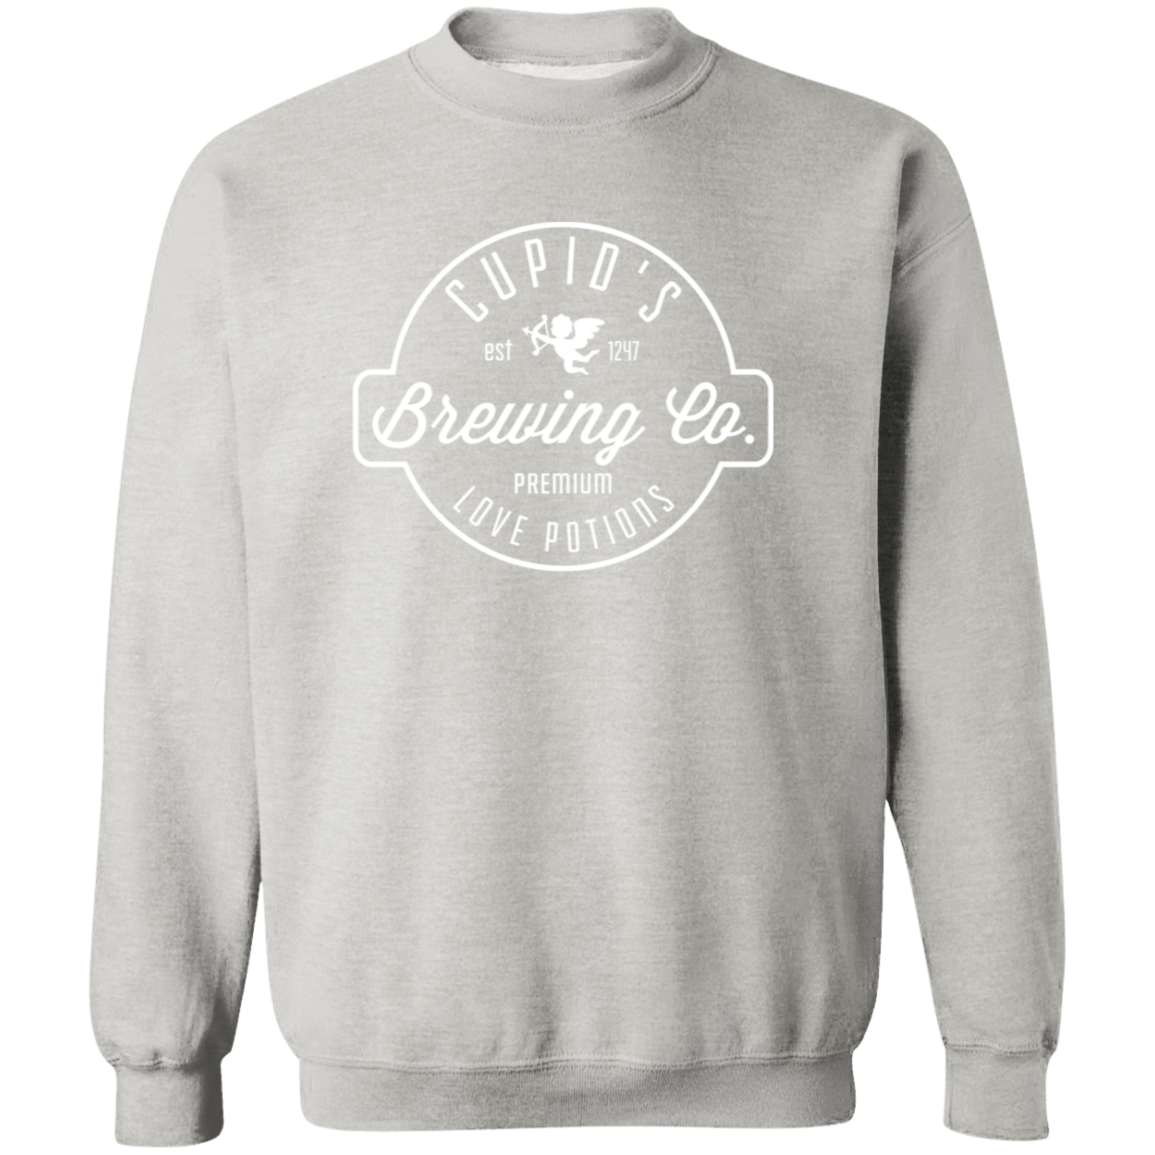 Cupid's Brewing Co Sweatshirt